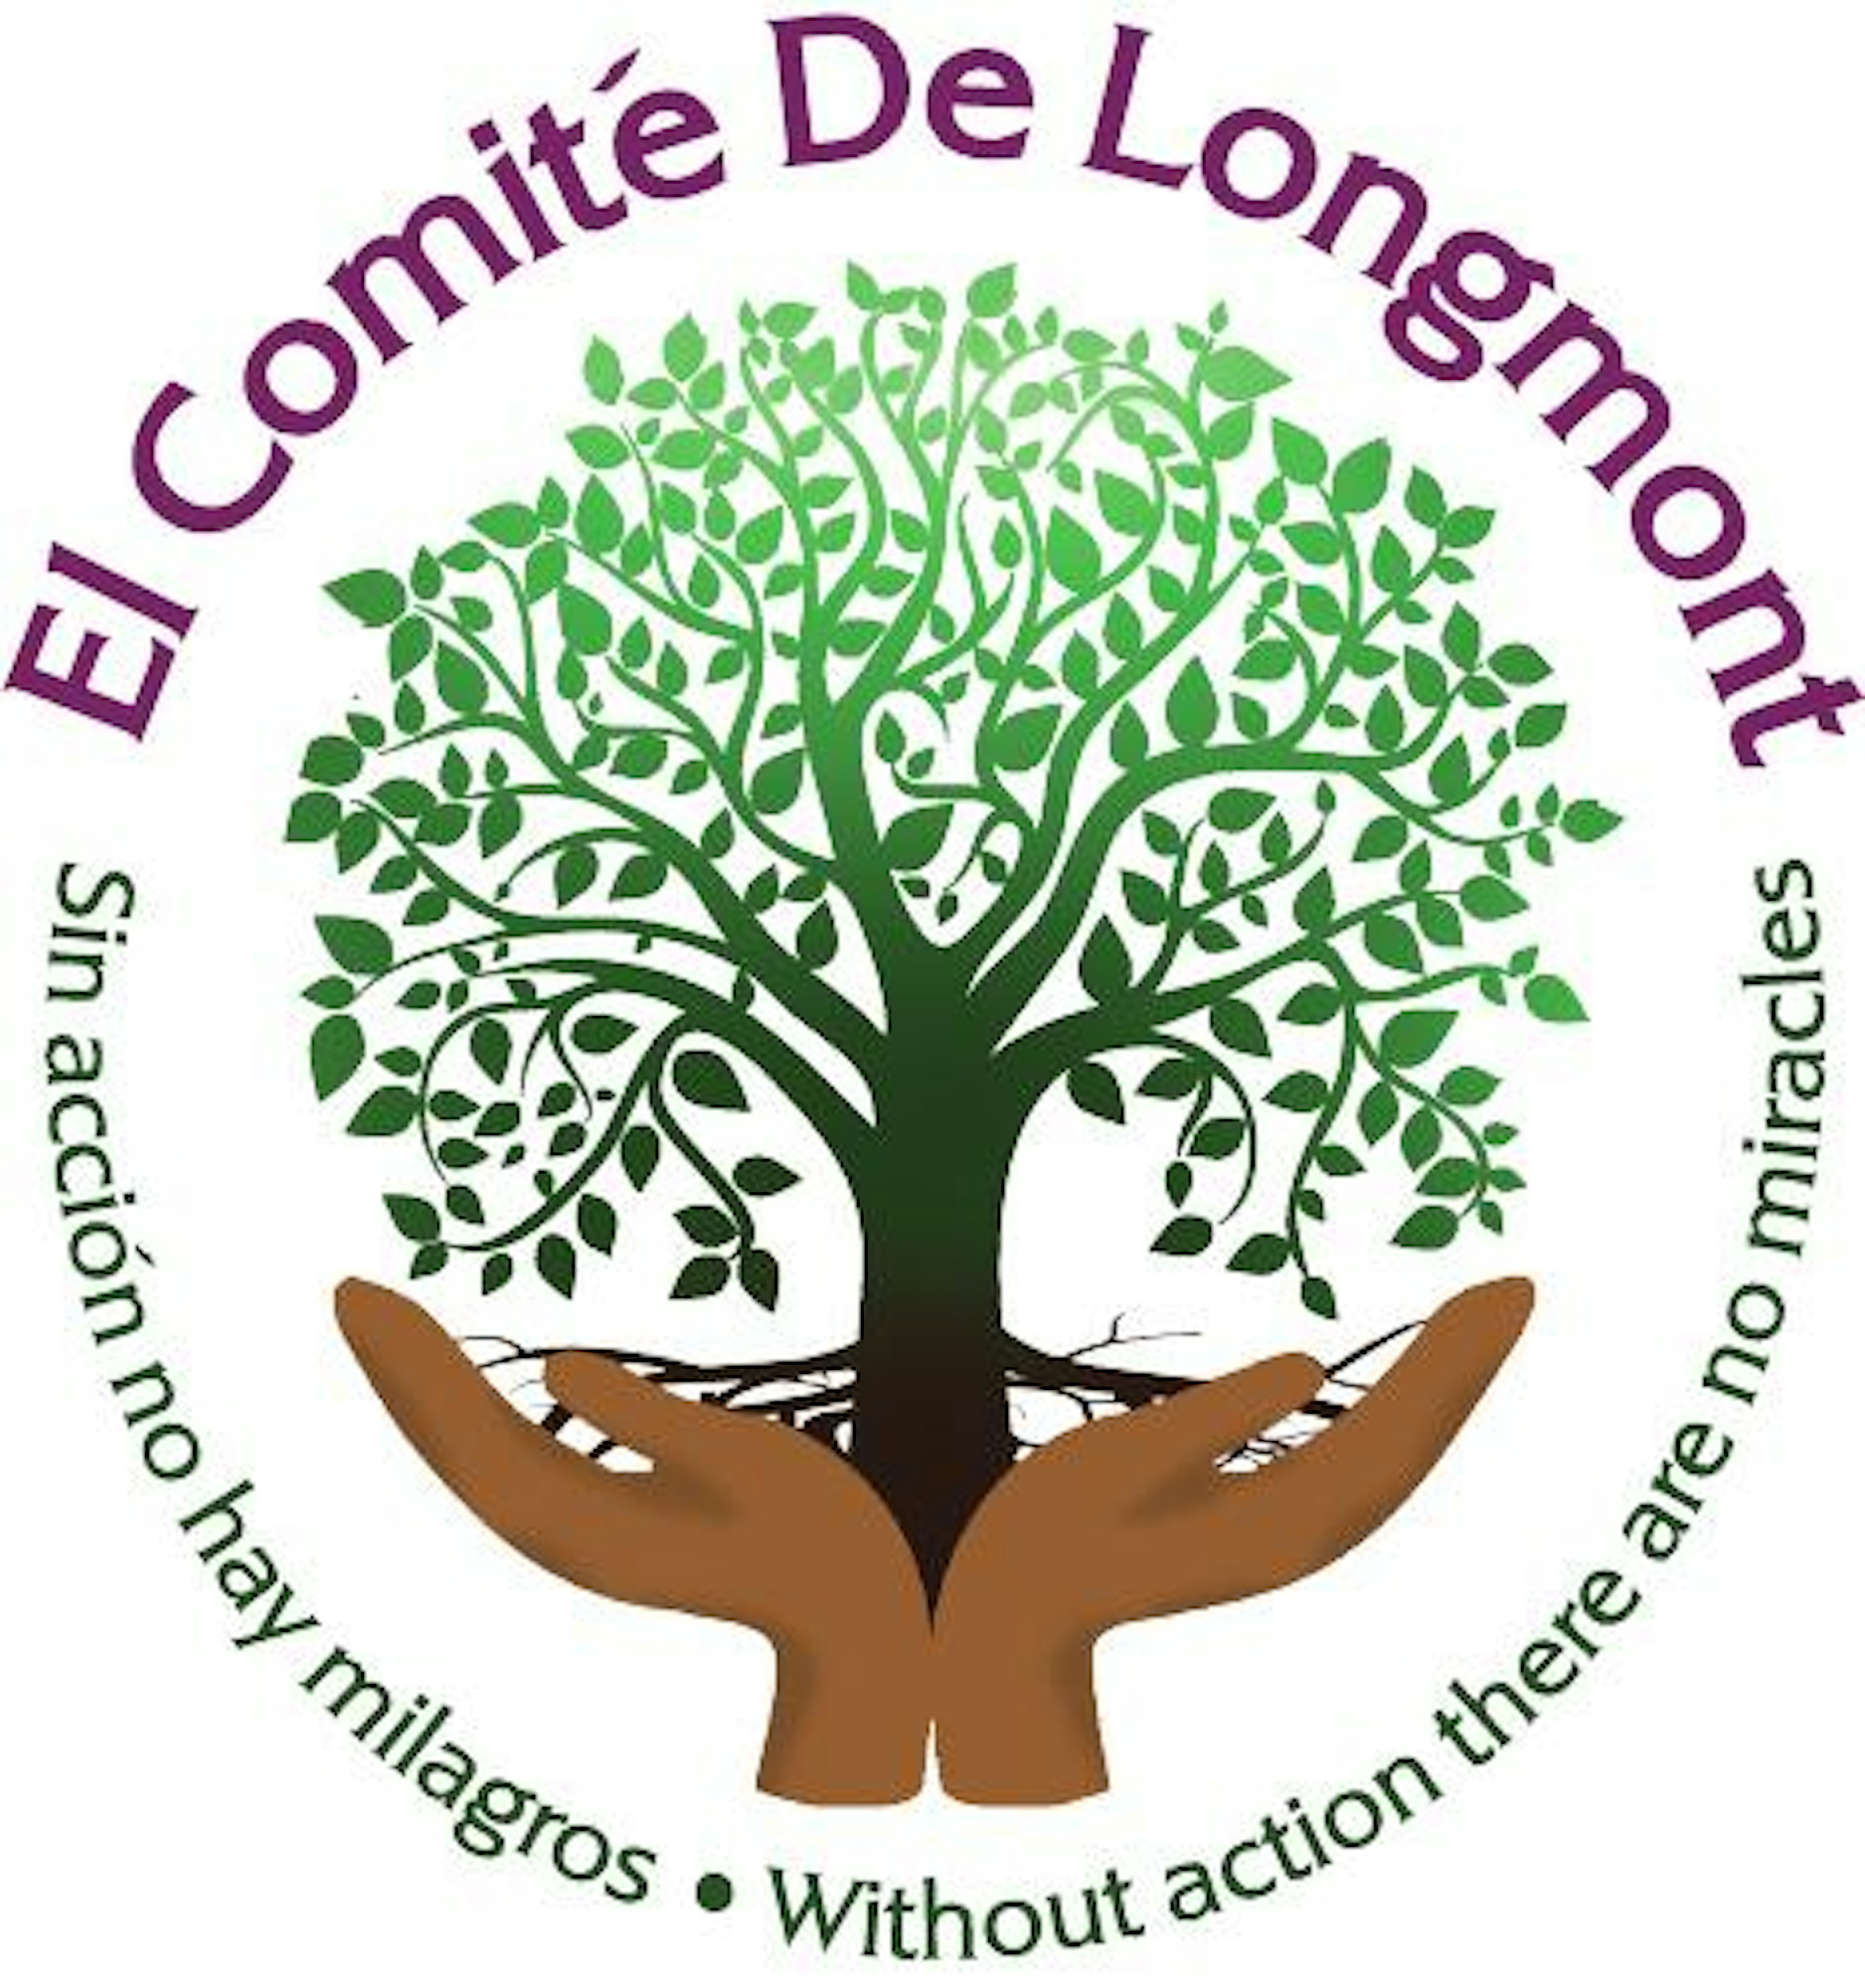 El Comite De Longmont logo